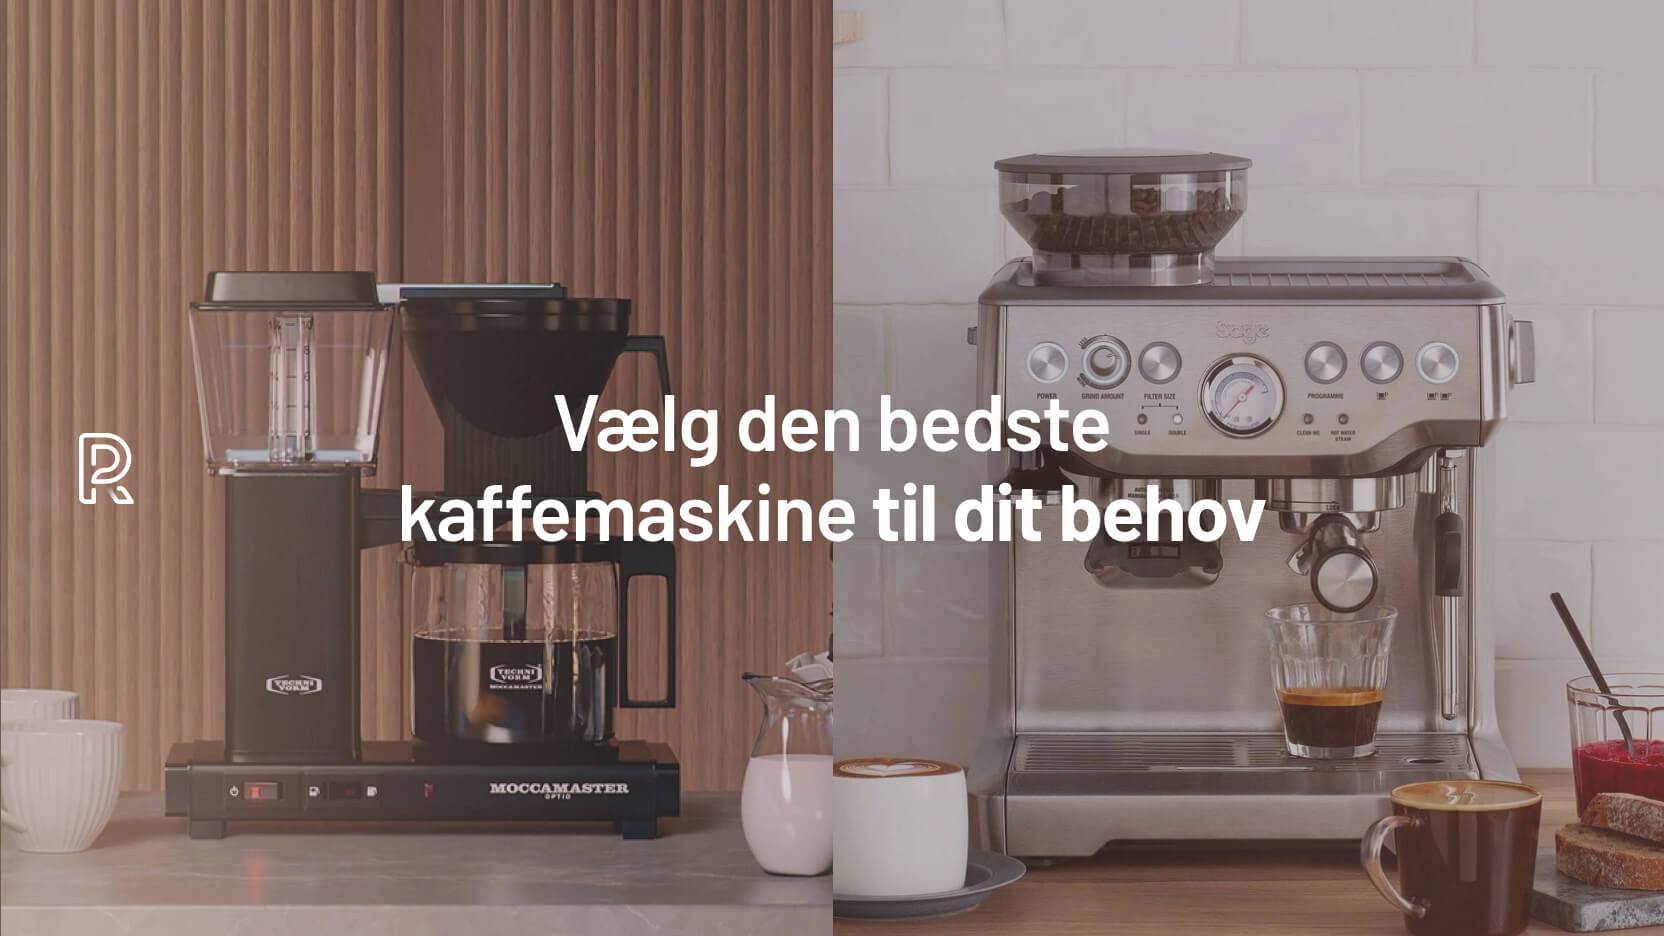 Vælg den bedste kaffemaskine til dit behov